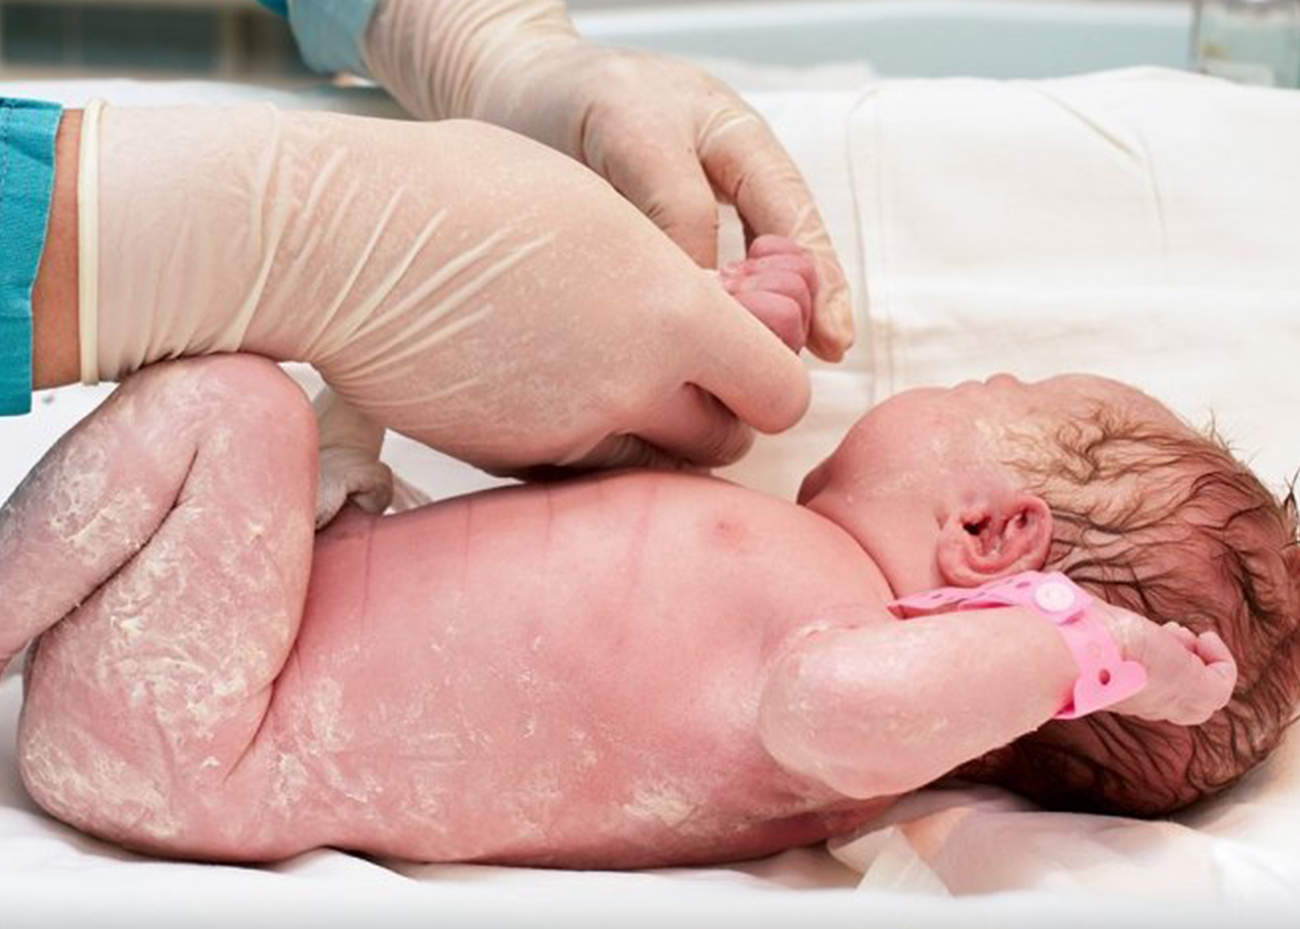 Cuidados e higiene del recién nacido 👶🏻 — Pediatra En Familia